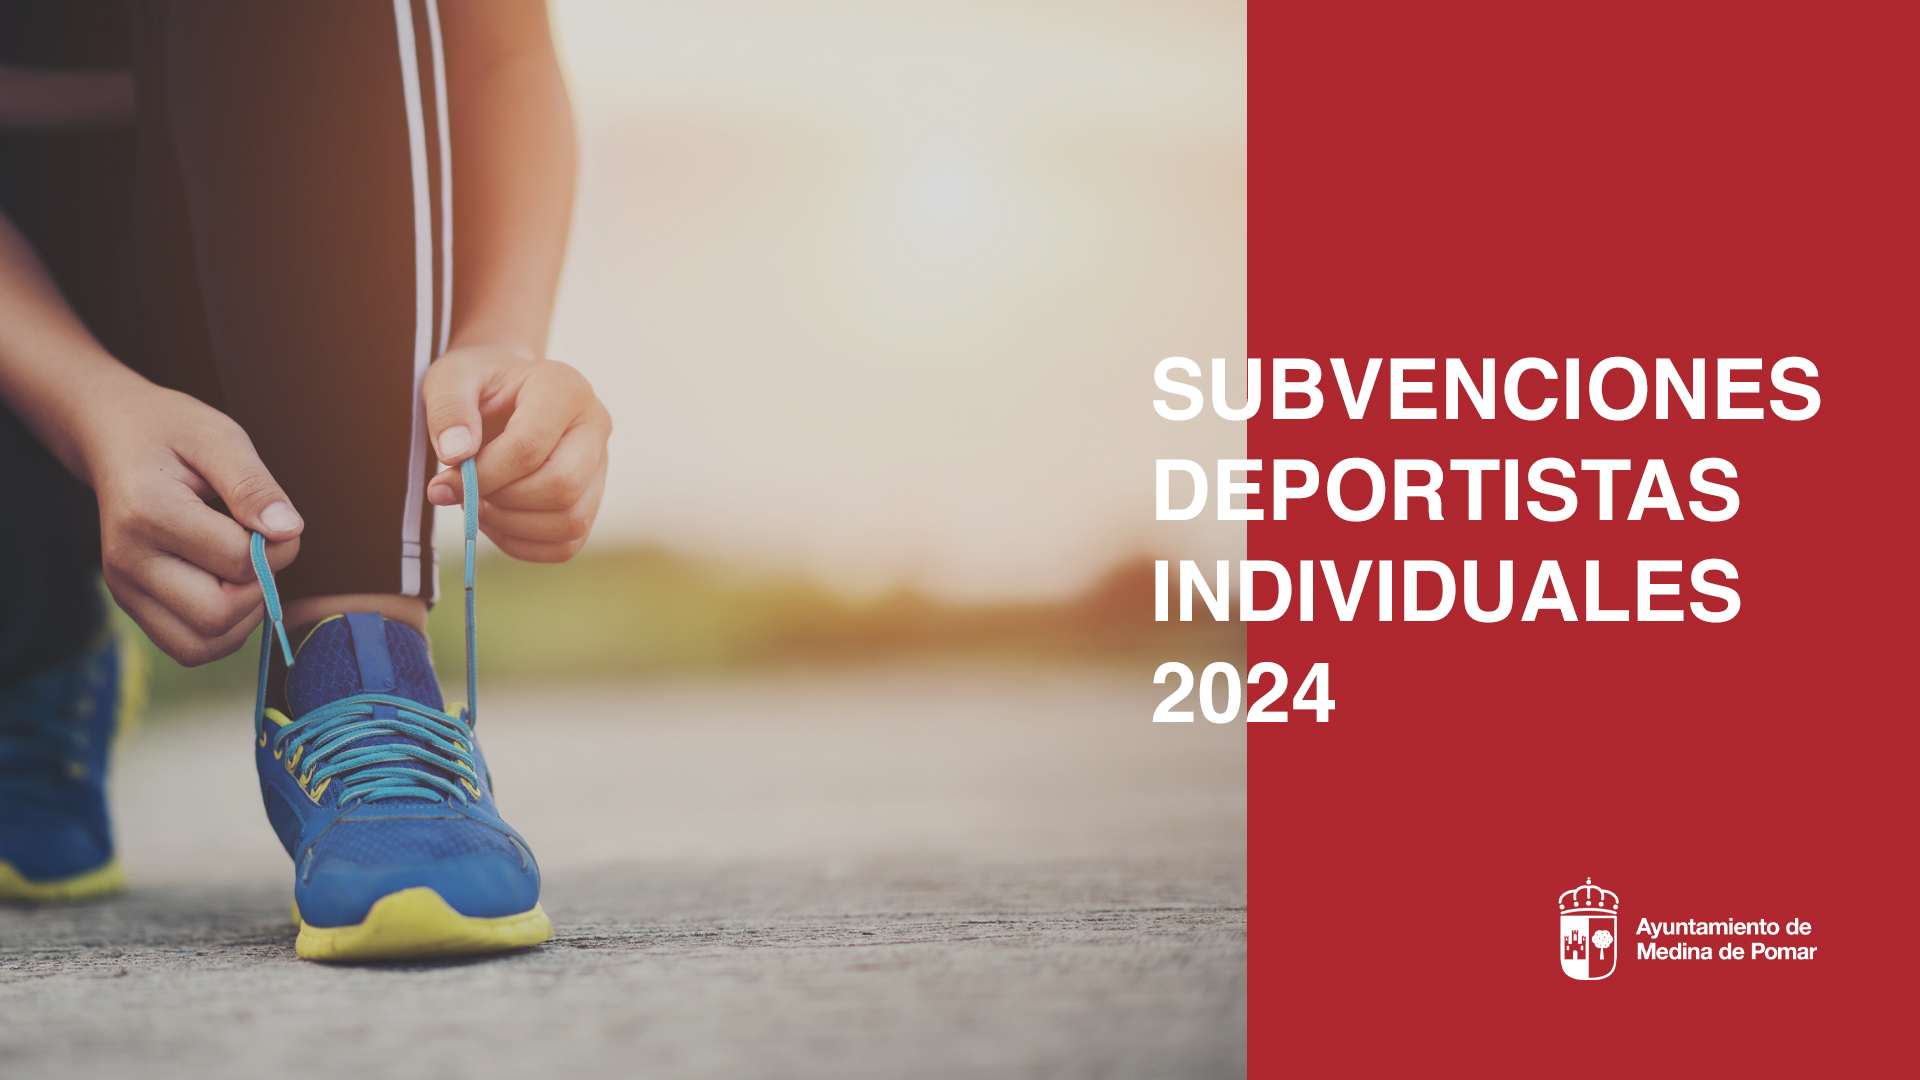 Subvenciones a deportistas individuales destacados 2024